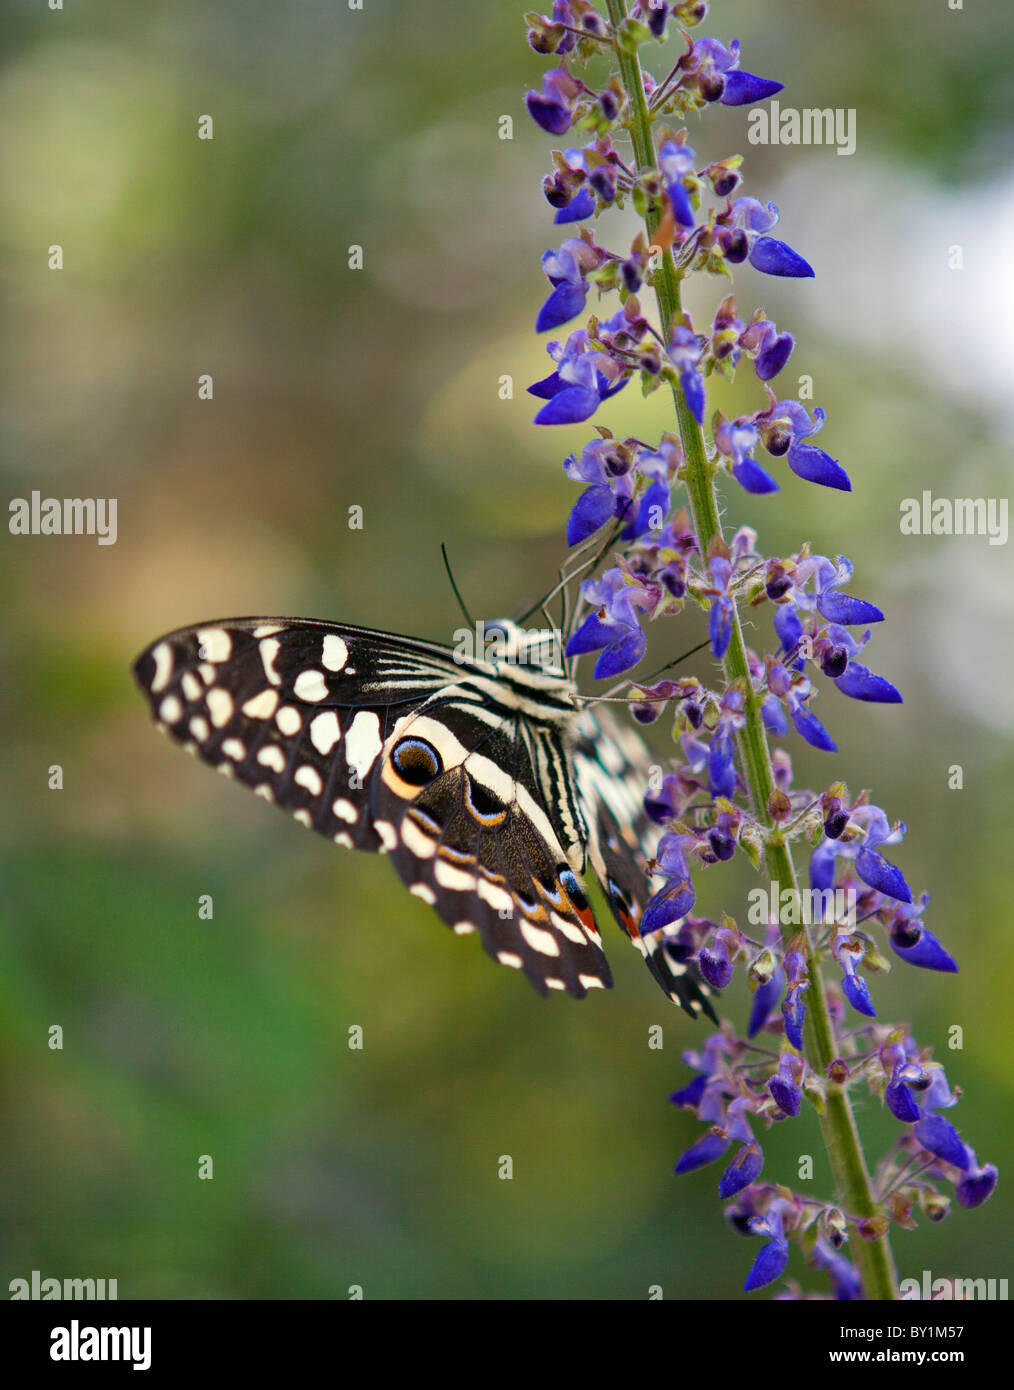 Ein Schmetterling in der Amani Nature Reserve, ein Naturschutzgebiet von 8, 380ha in den östlichen Bogen die Usambara-Berge gelegen. Stockfoto